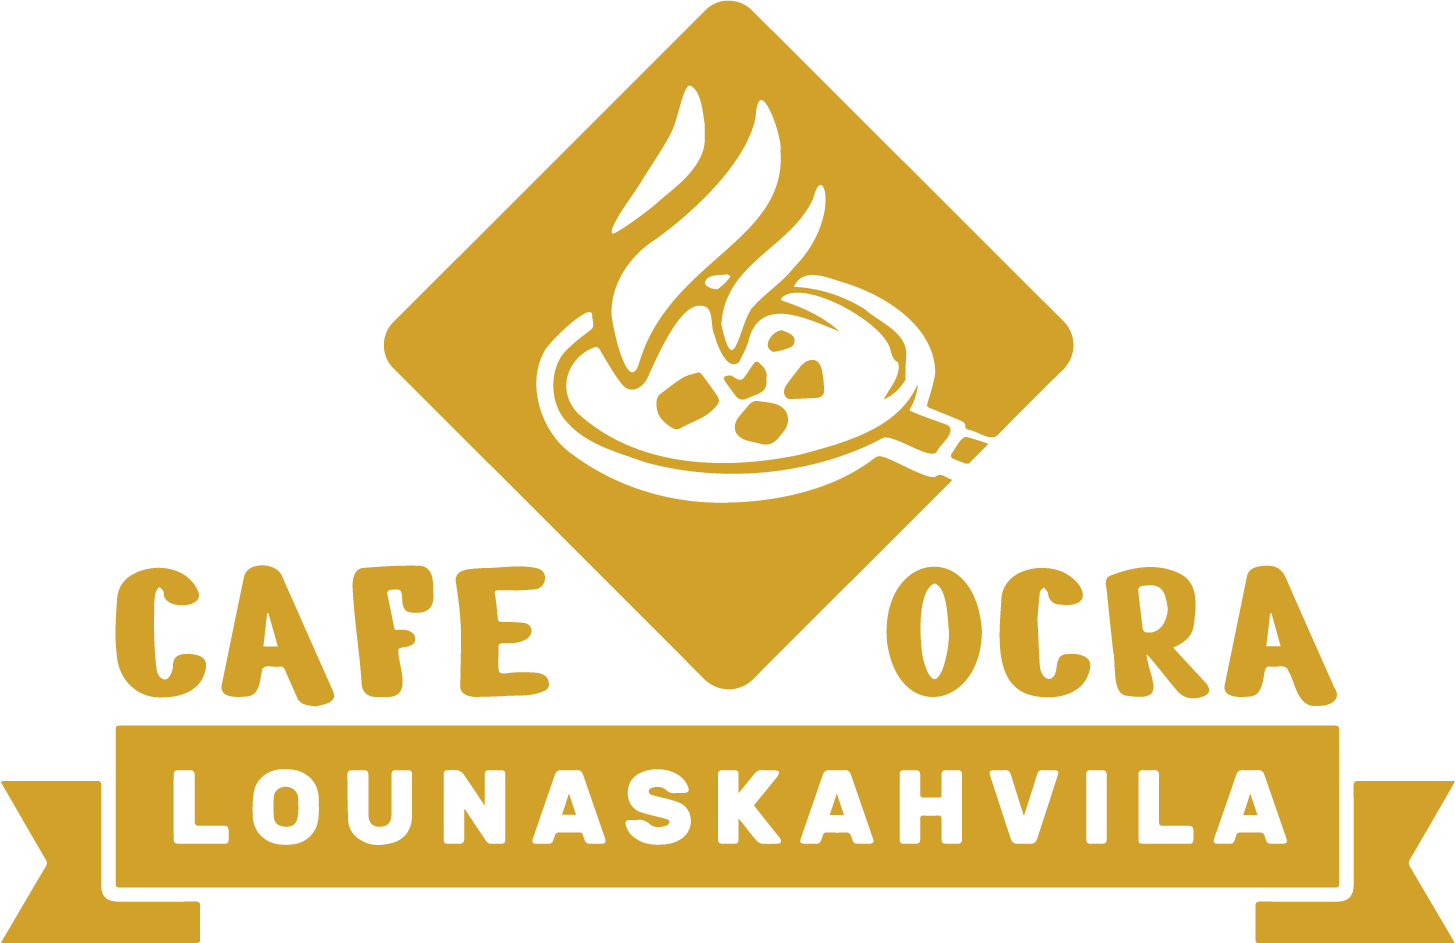 Cafe Ocra